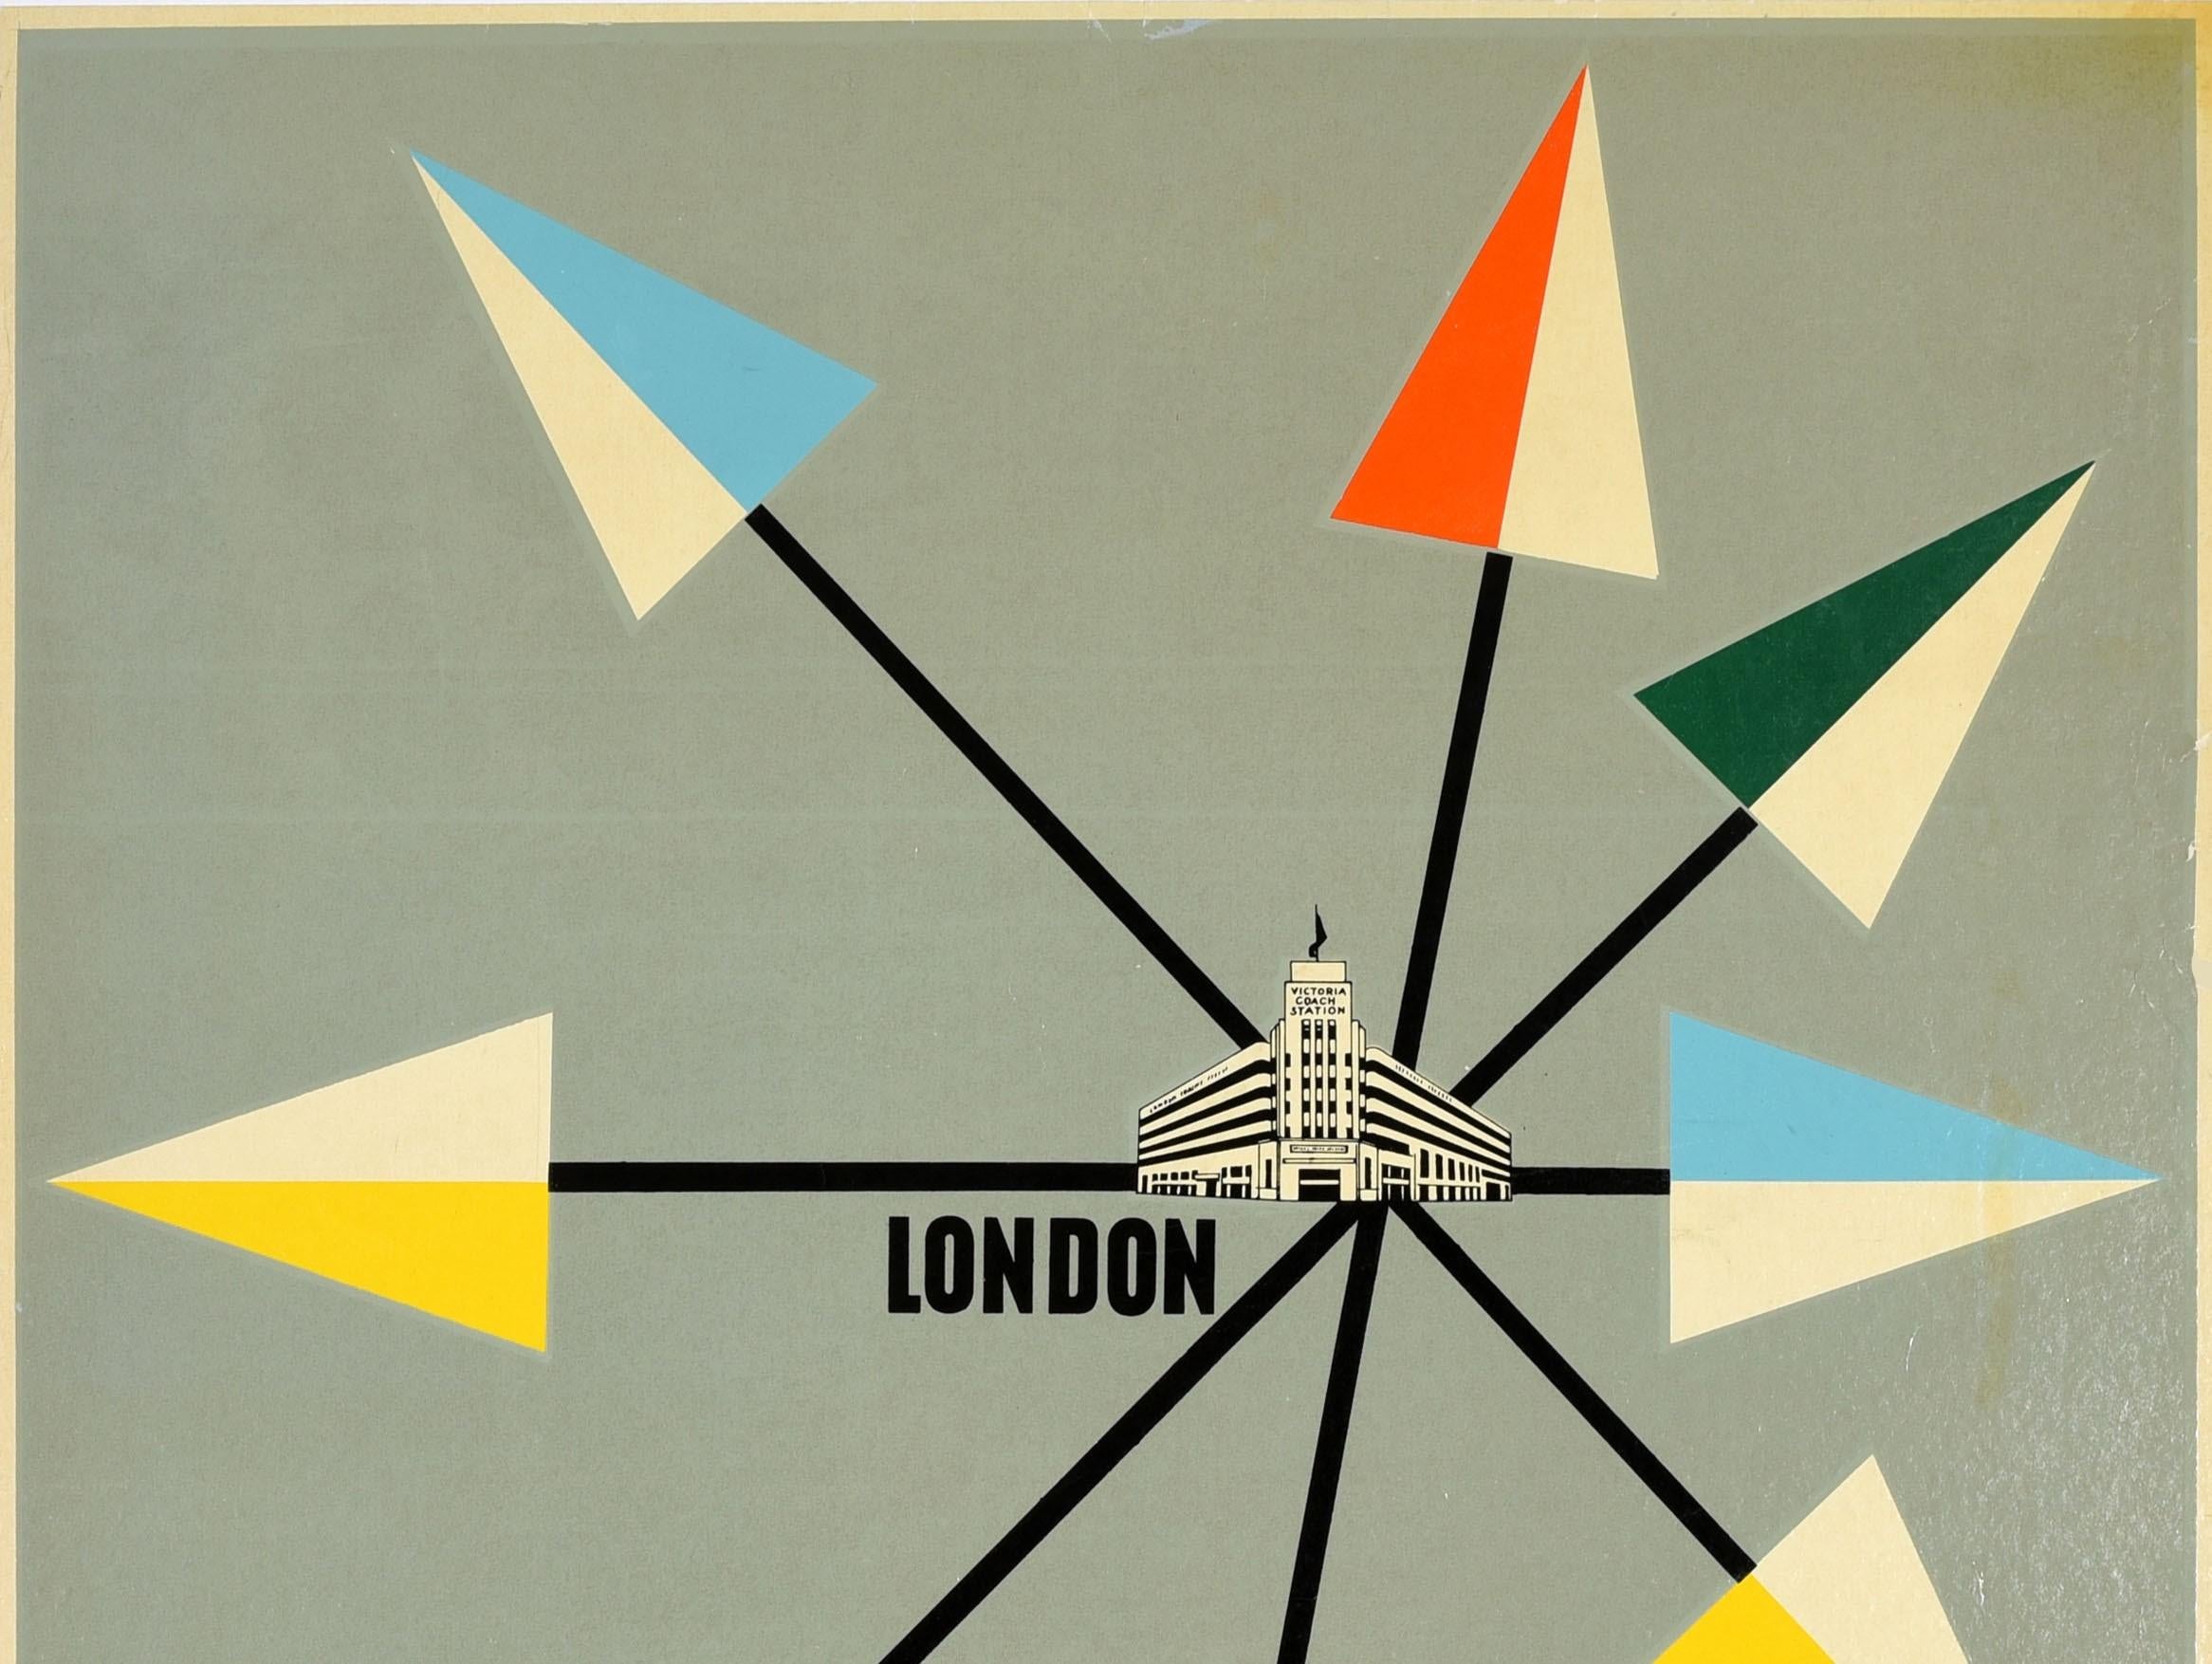 Affiche de voyage vintage originale - Pour votre voyage à partir de Londres, de nombreux services de correspondance à partir de la gare routière Victoria - présentant une superbe illustration moderne du milieu du siècle du bâtiment de la gare